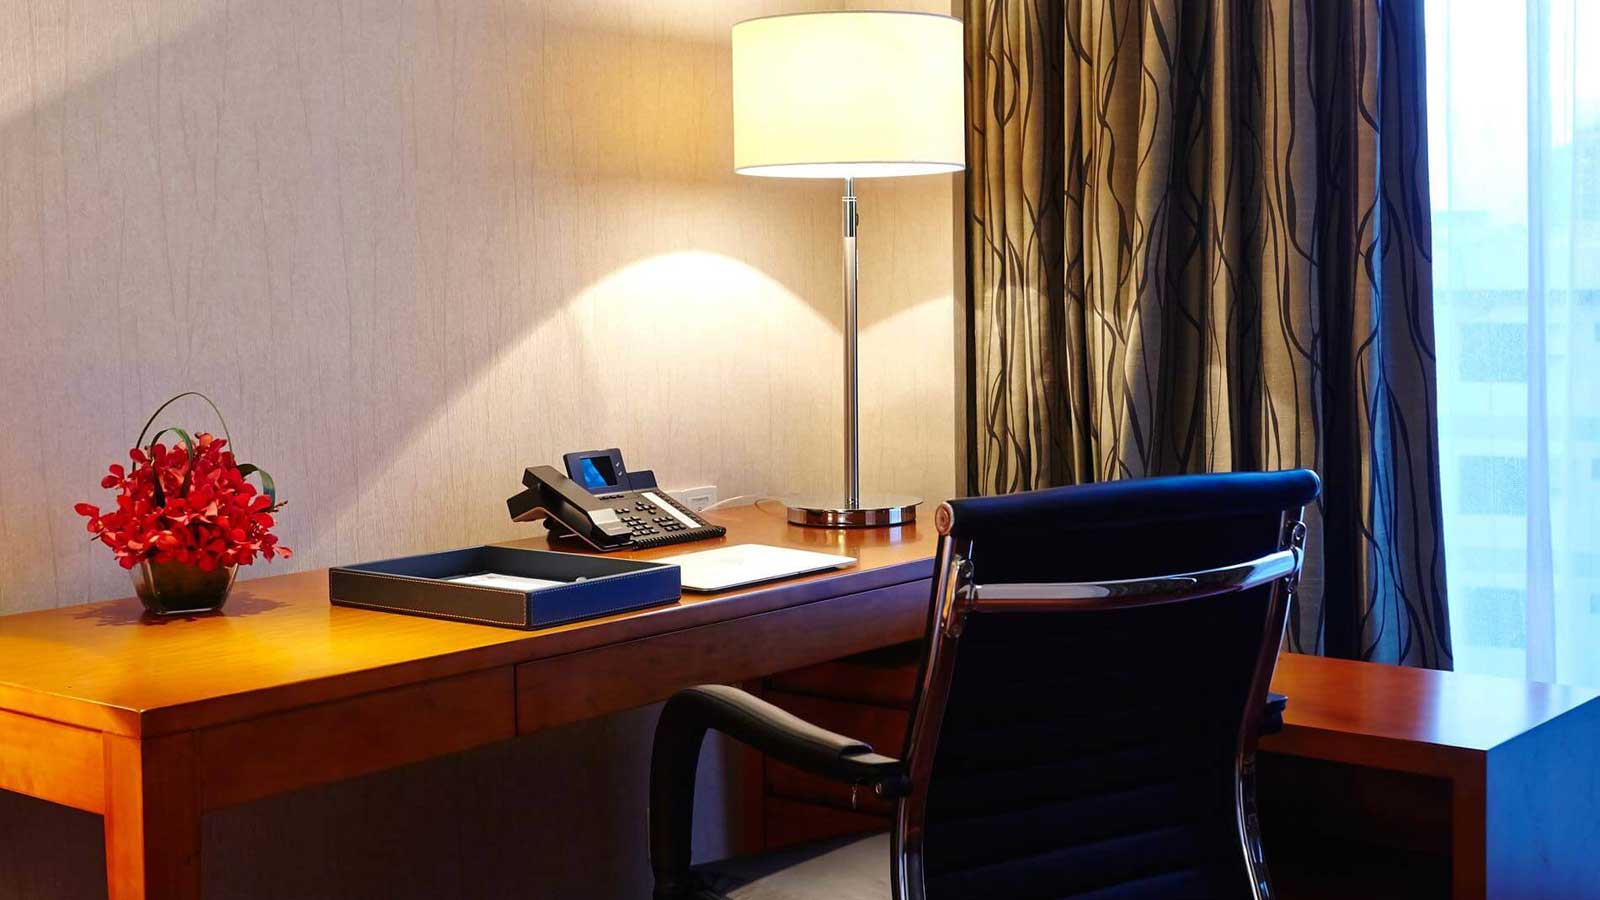 โต๊ะทำงาน - ห้องดีลักซ์ สตูดิโอ - โรงแรม อมารี ธากา บังคลาเทศ